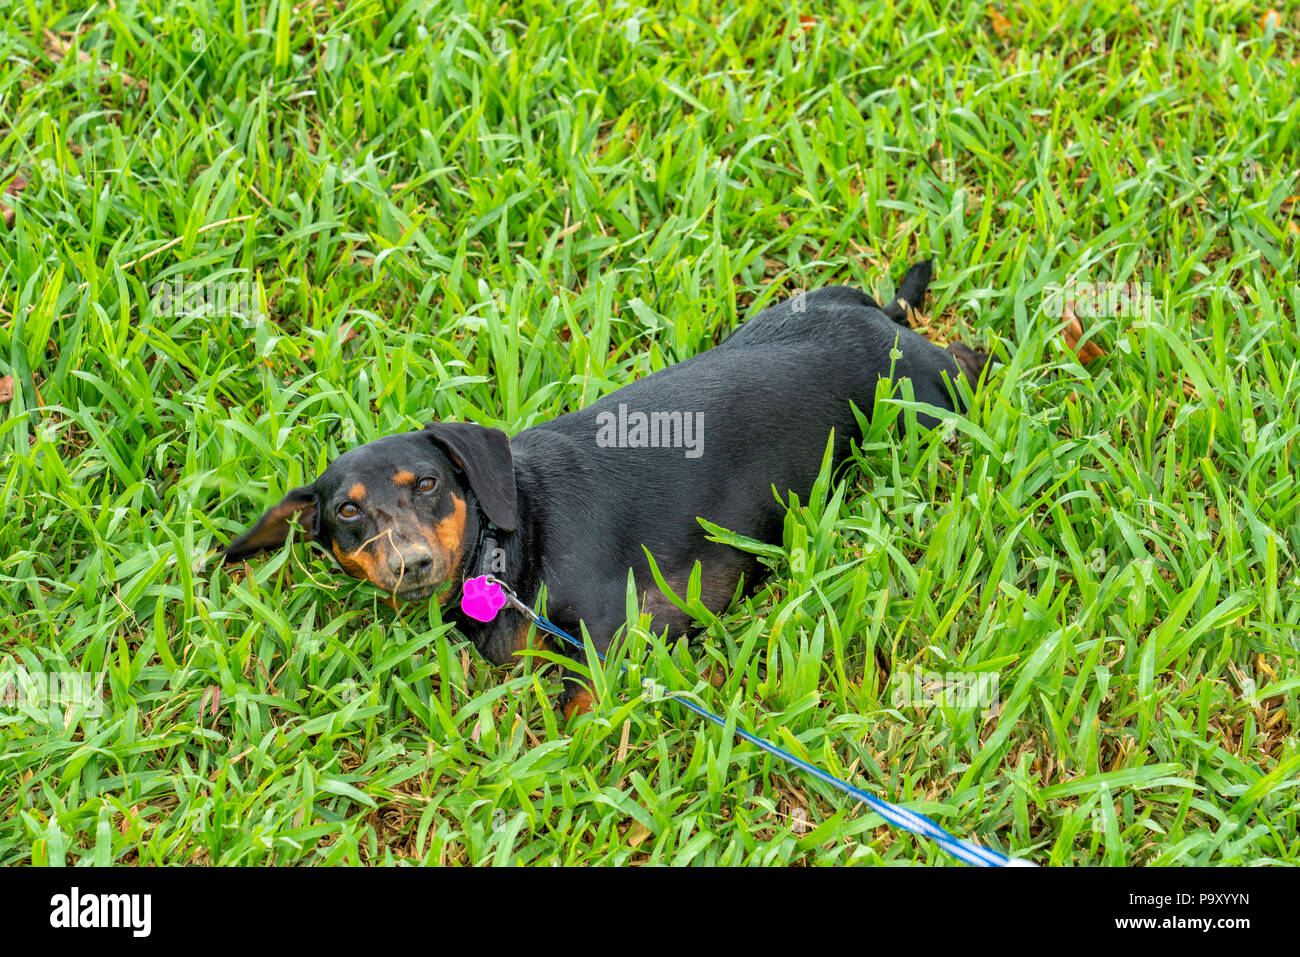 Singapur - 15. Juli 2018: Dackel spielen und Graben. Der Dackel ist eine kurzbeinige, lange-bodied, hound - Typ Hunderasse. Die Standardgröße dachsh Stockfoto